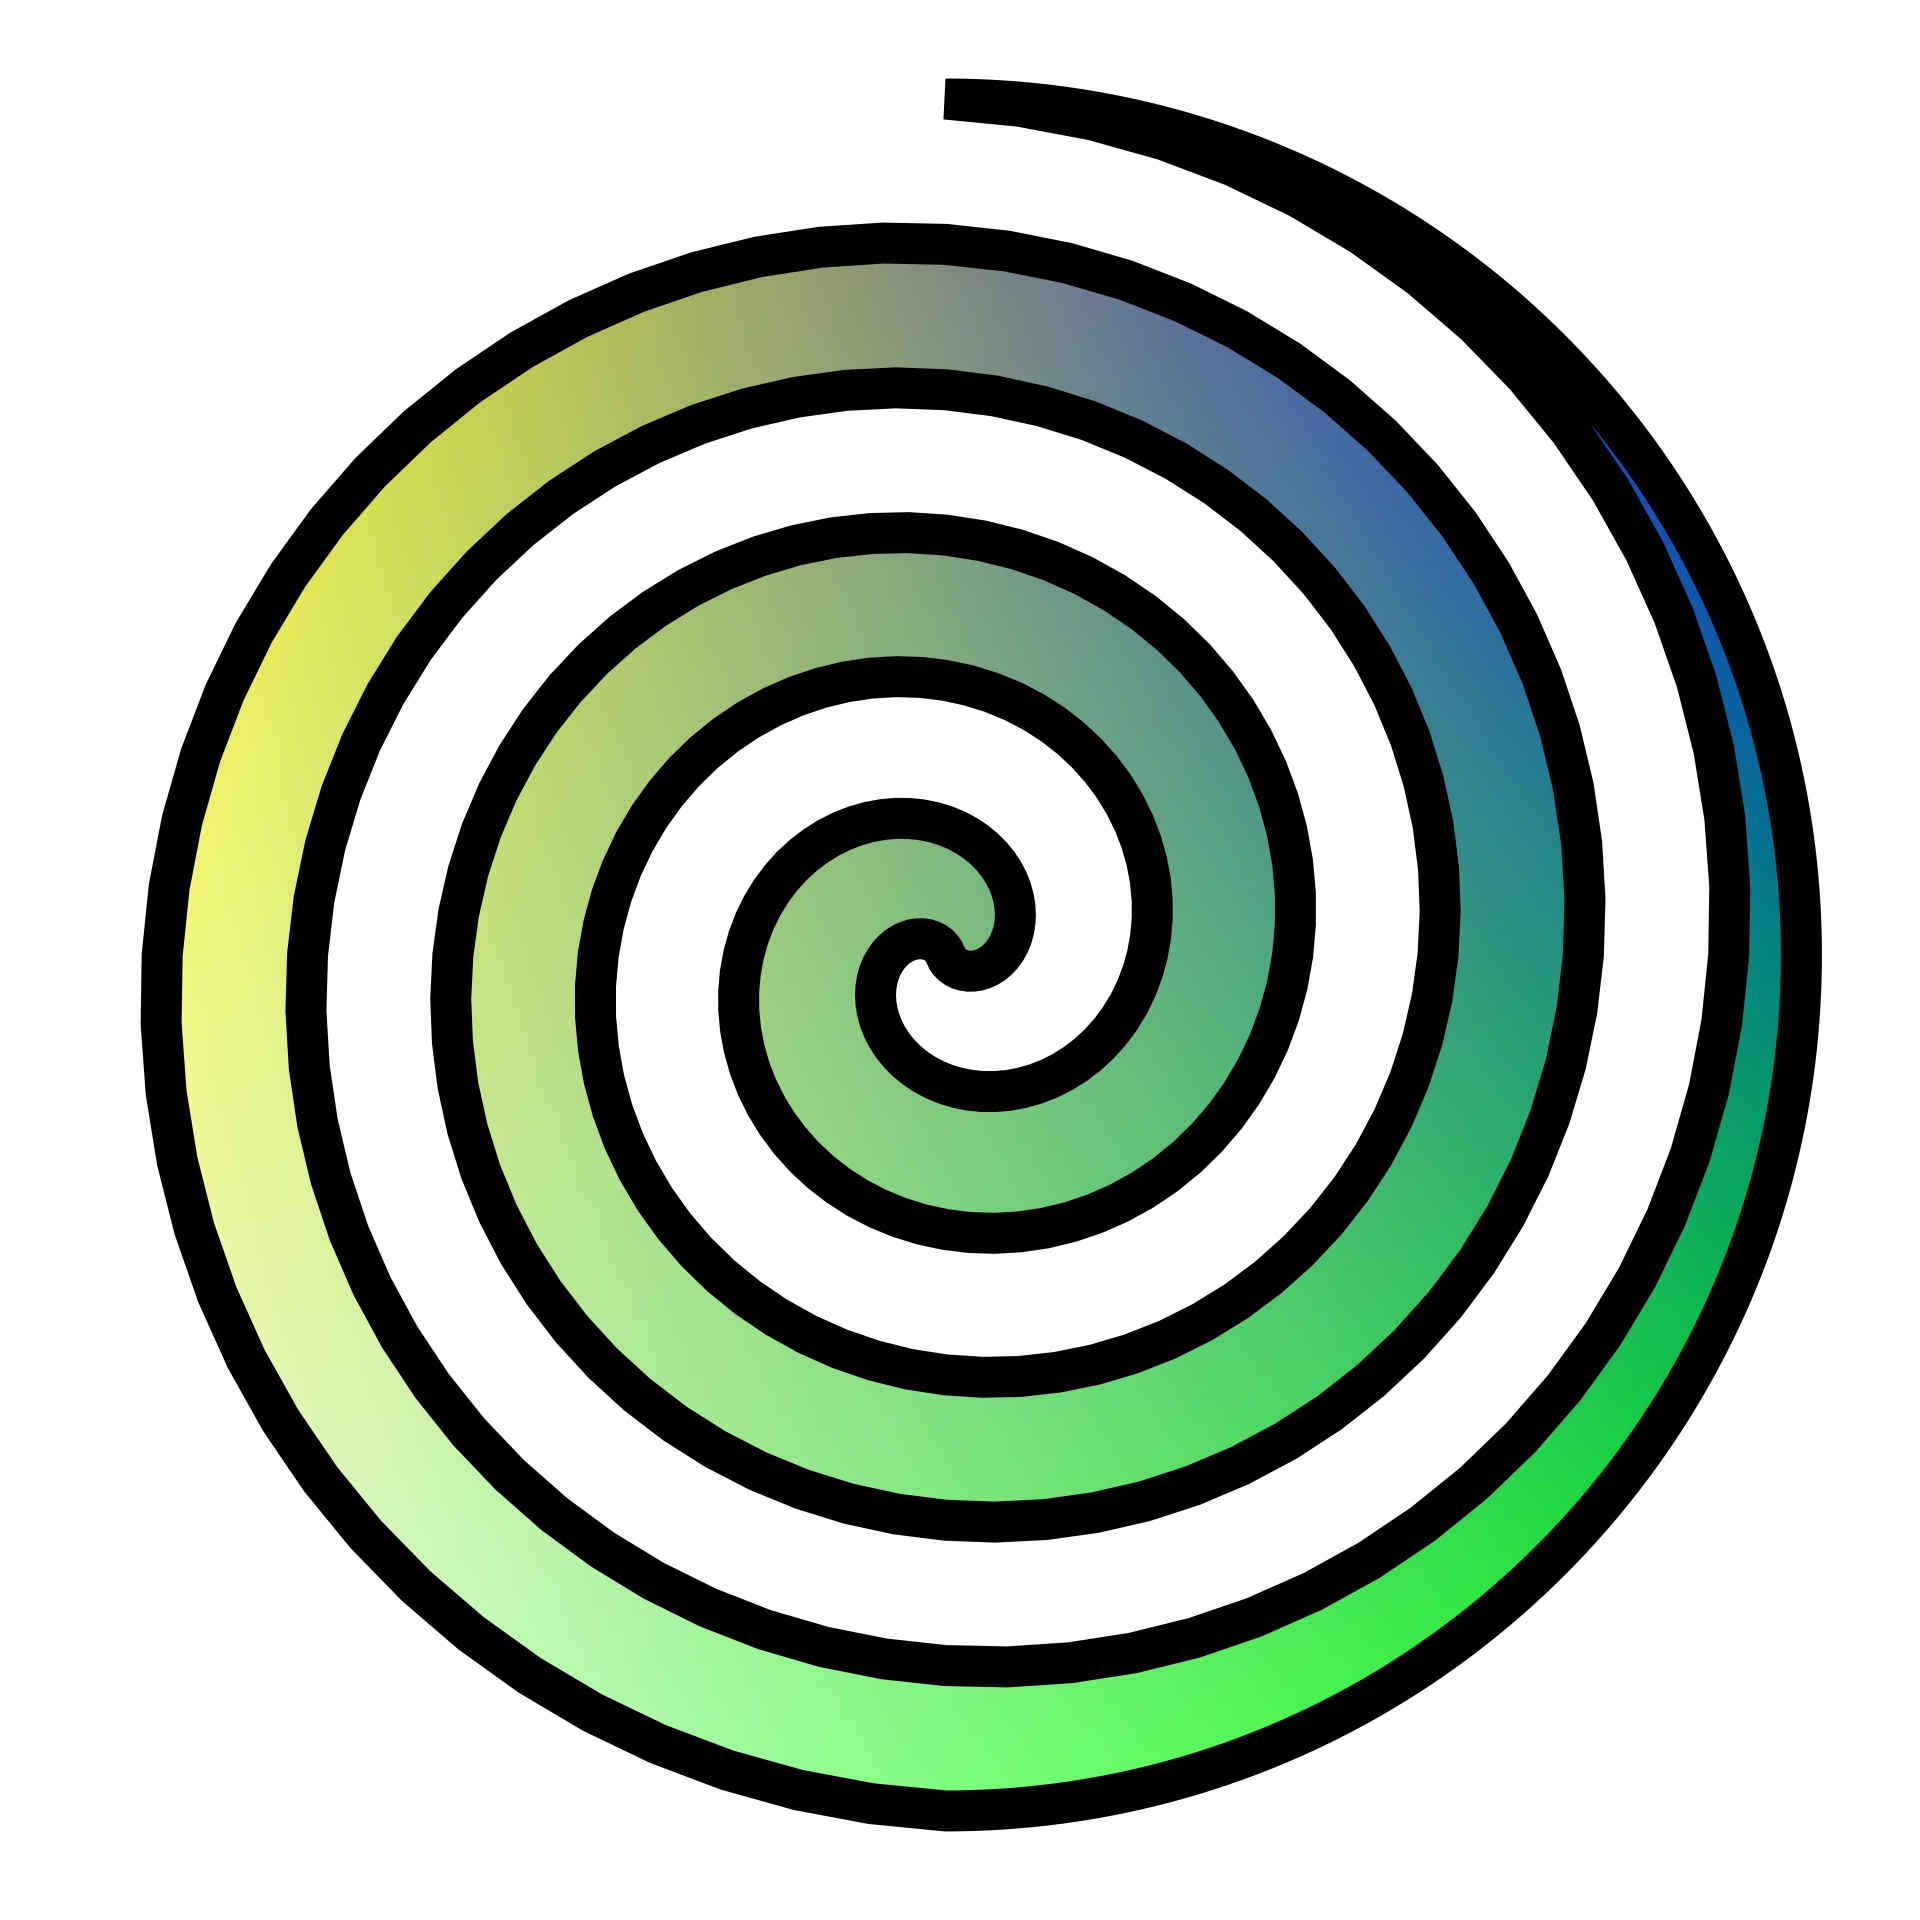 Résultat de recherche d'images pour "spirale 3d"